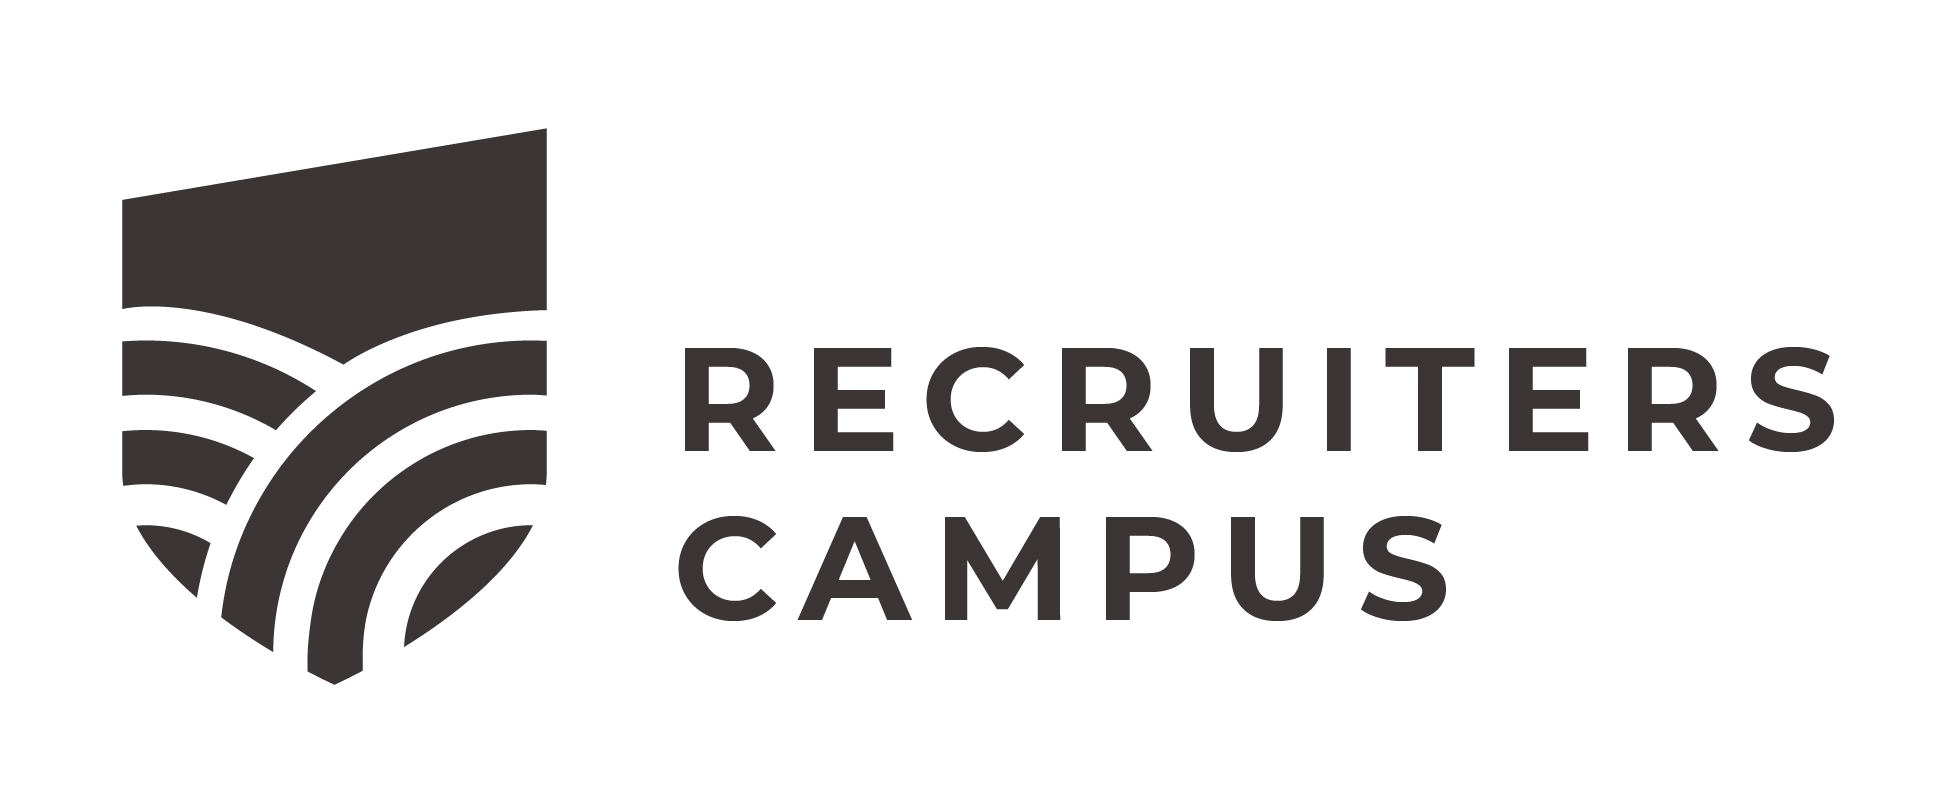 Recruiters campus logo